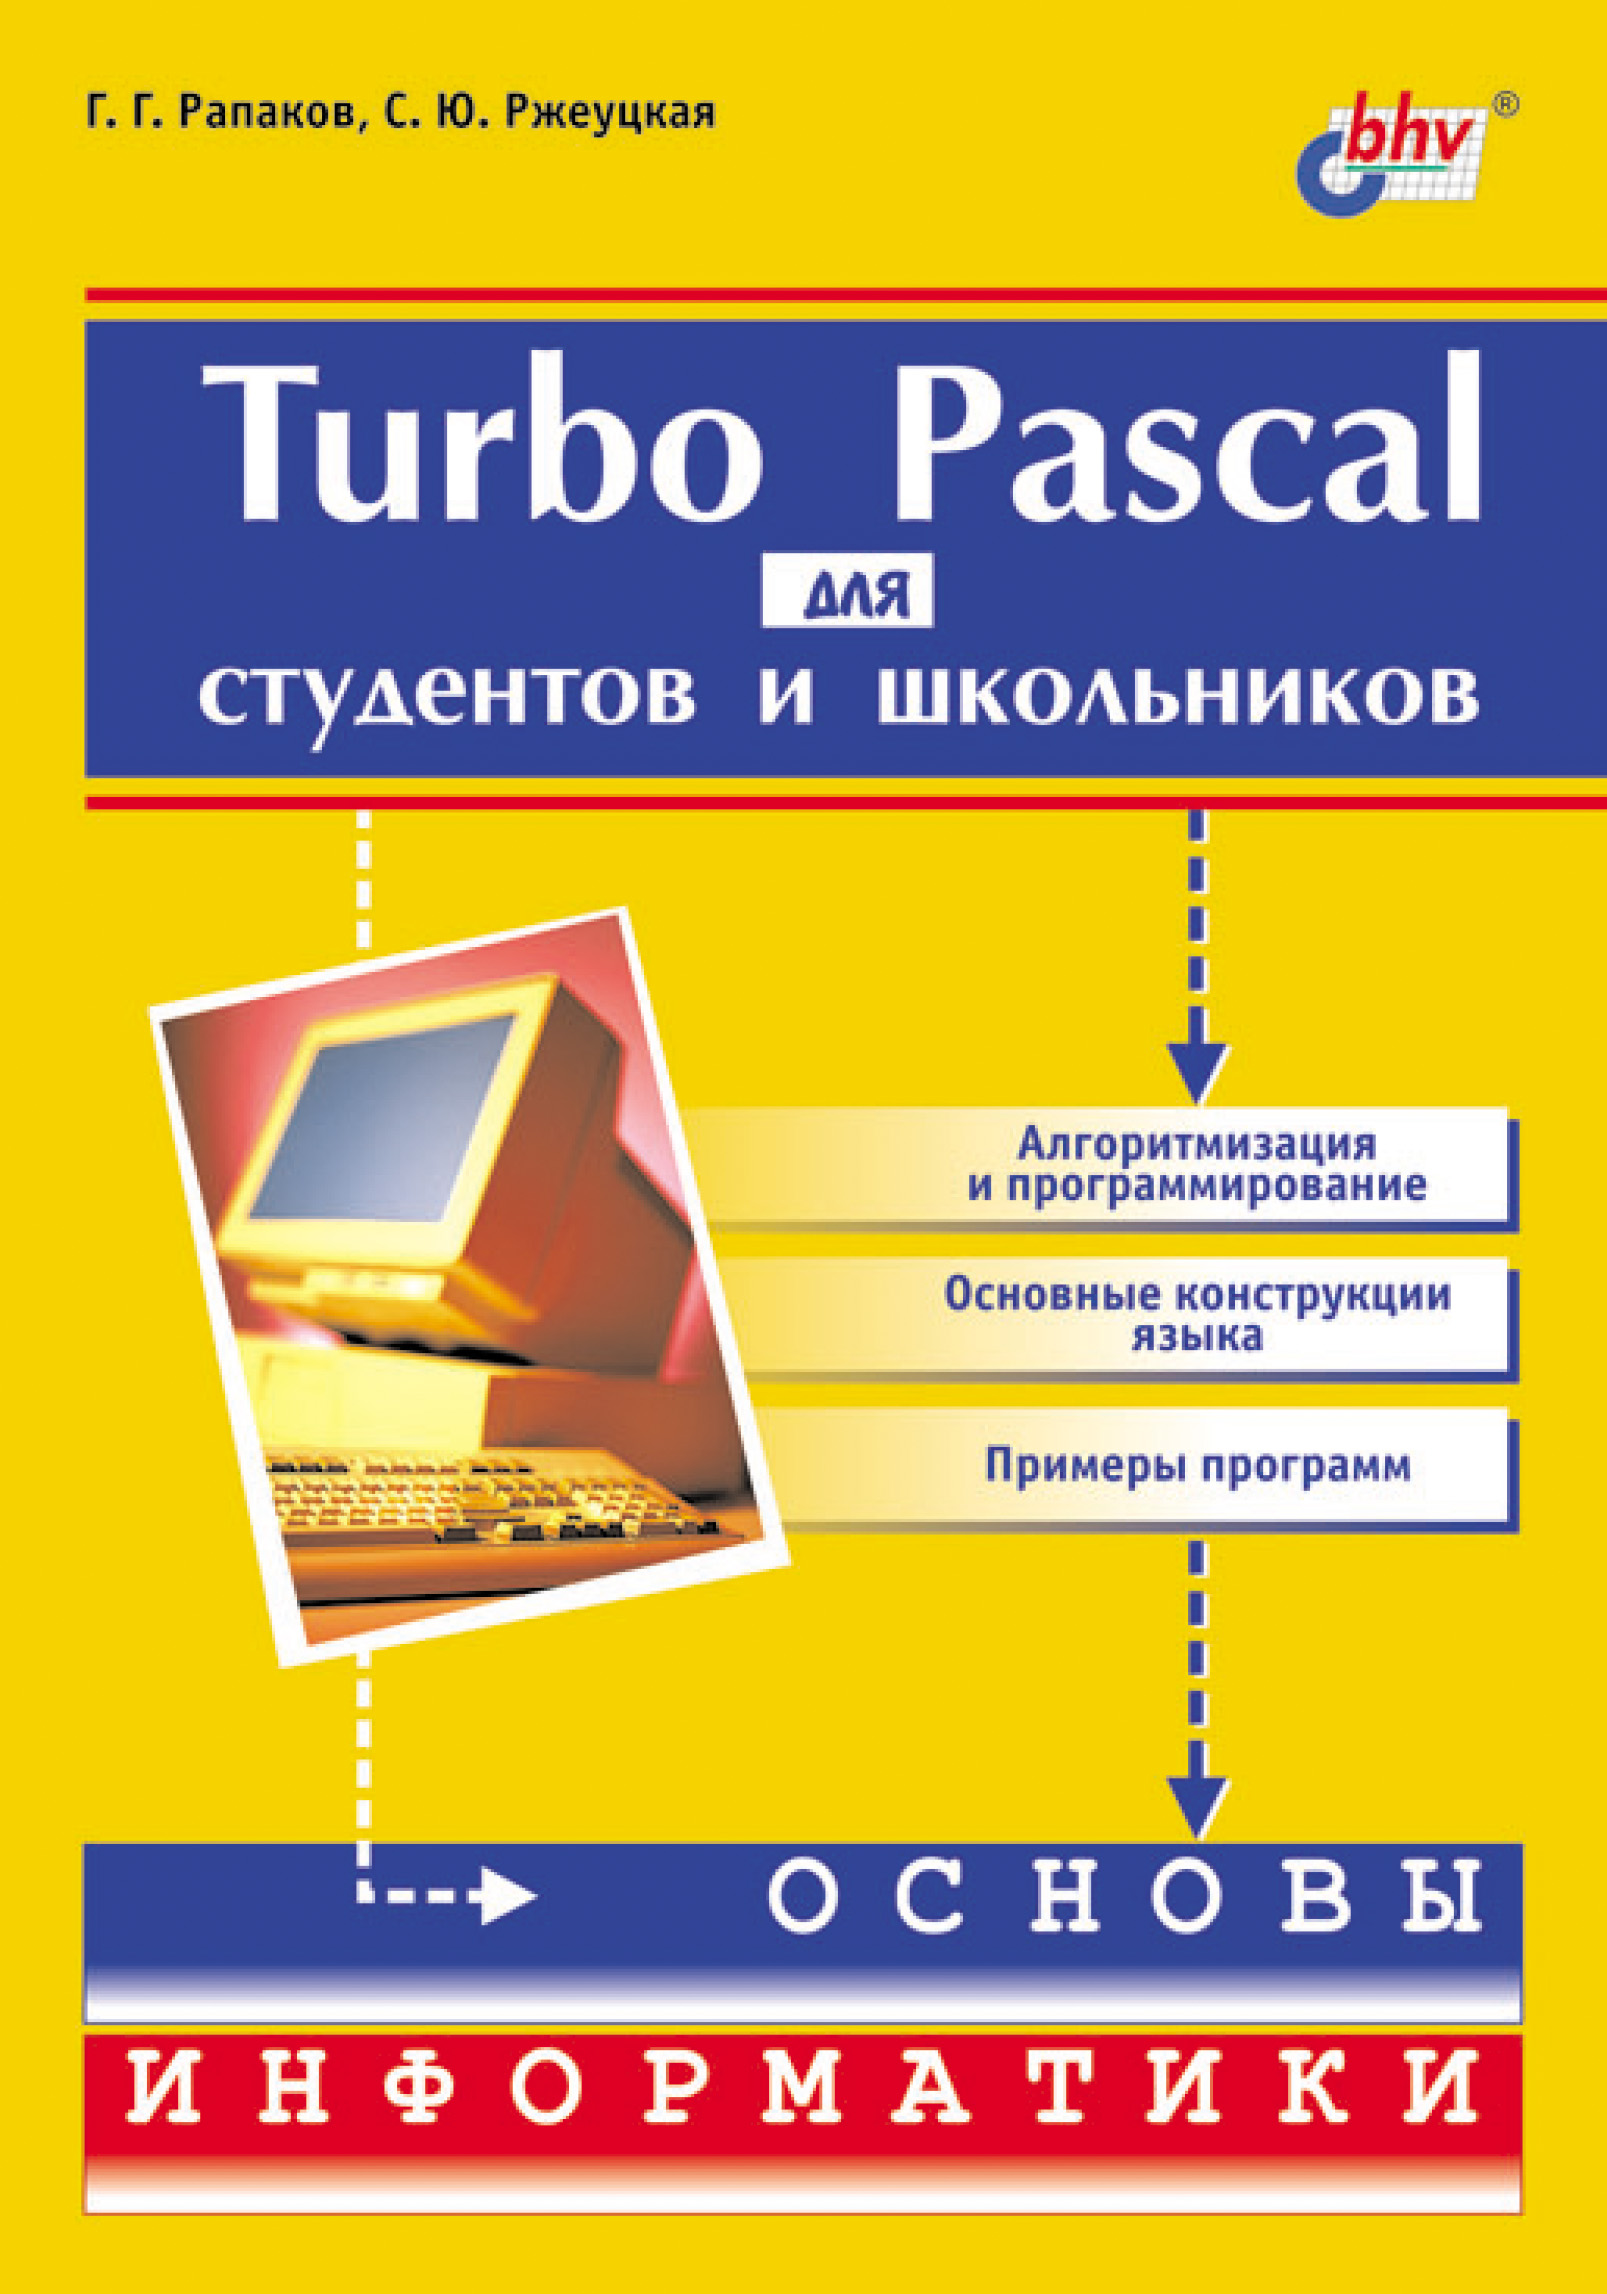 С. Ю. Ржеуцкая Turbo Pascal для студентов и школьников